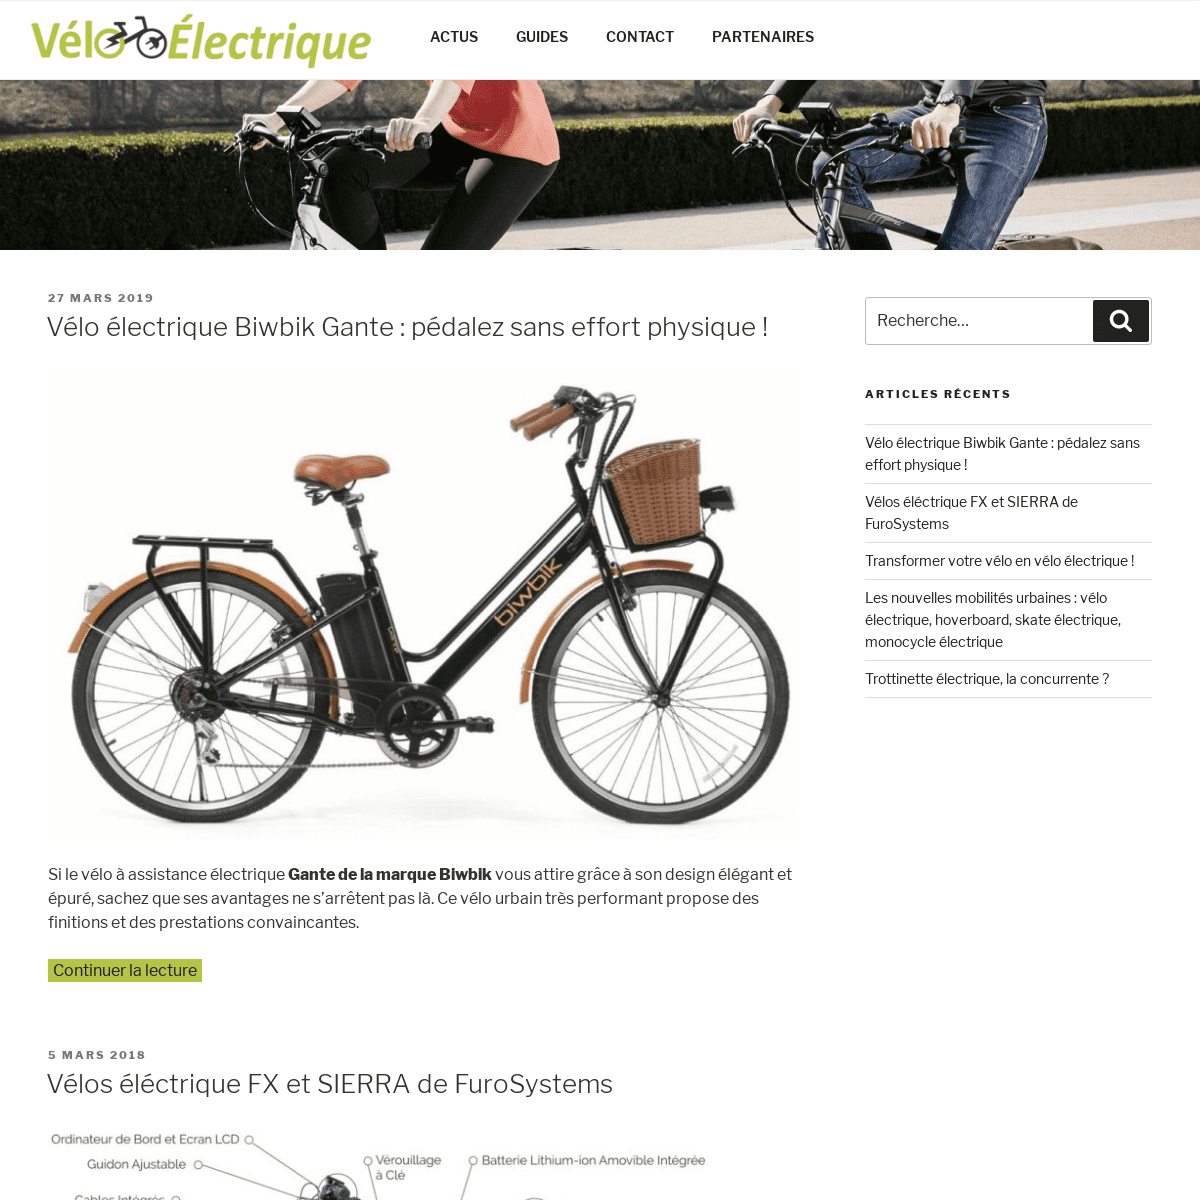 Vélo électrique - Actualités, conseils sur veloelectrique.net